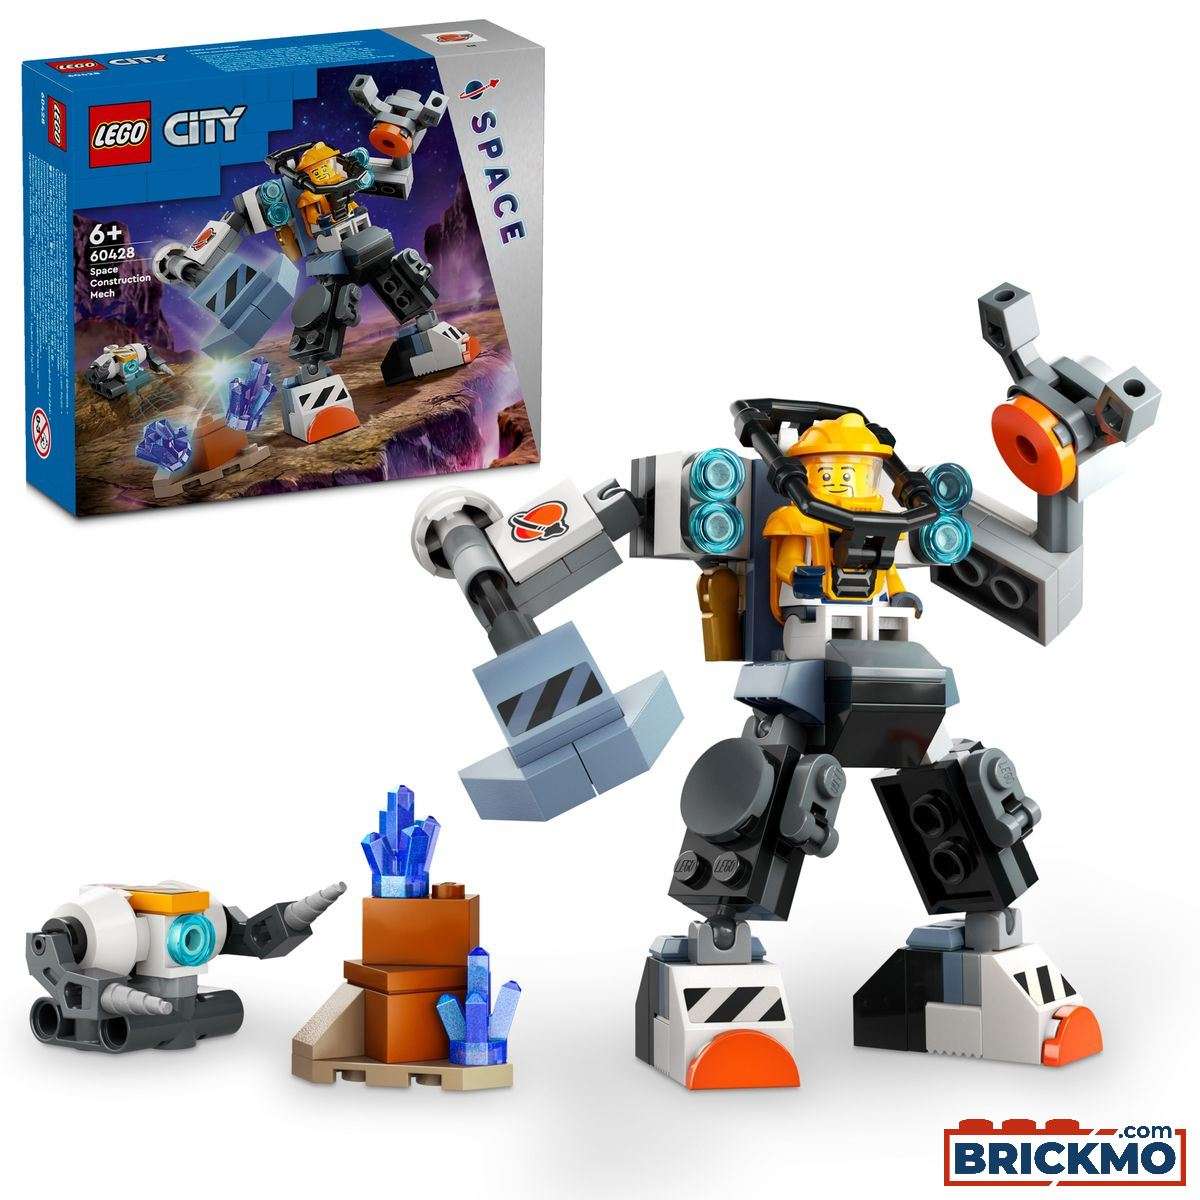 LEGO City 60428 Weltraum-Mech 60428